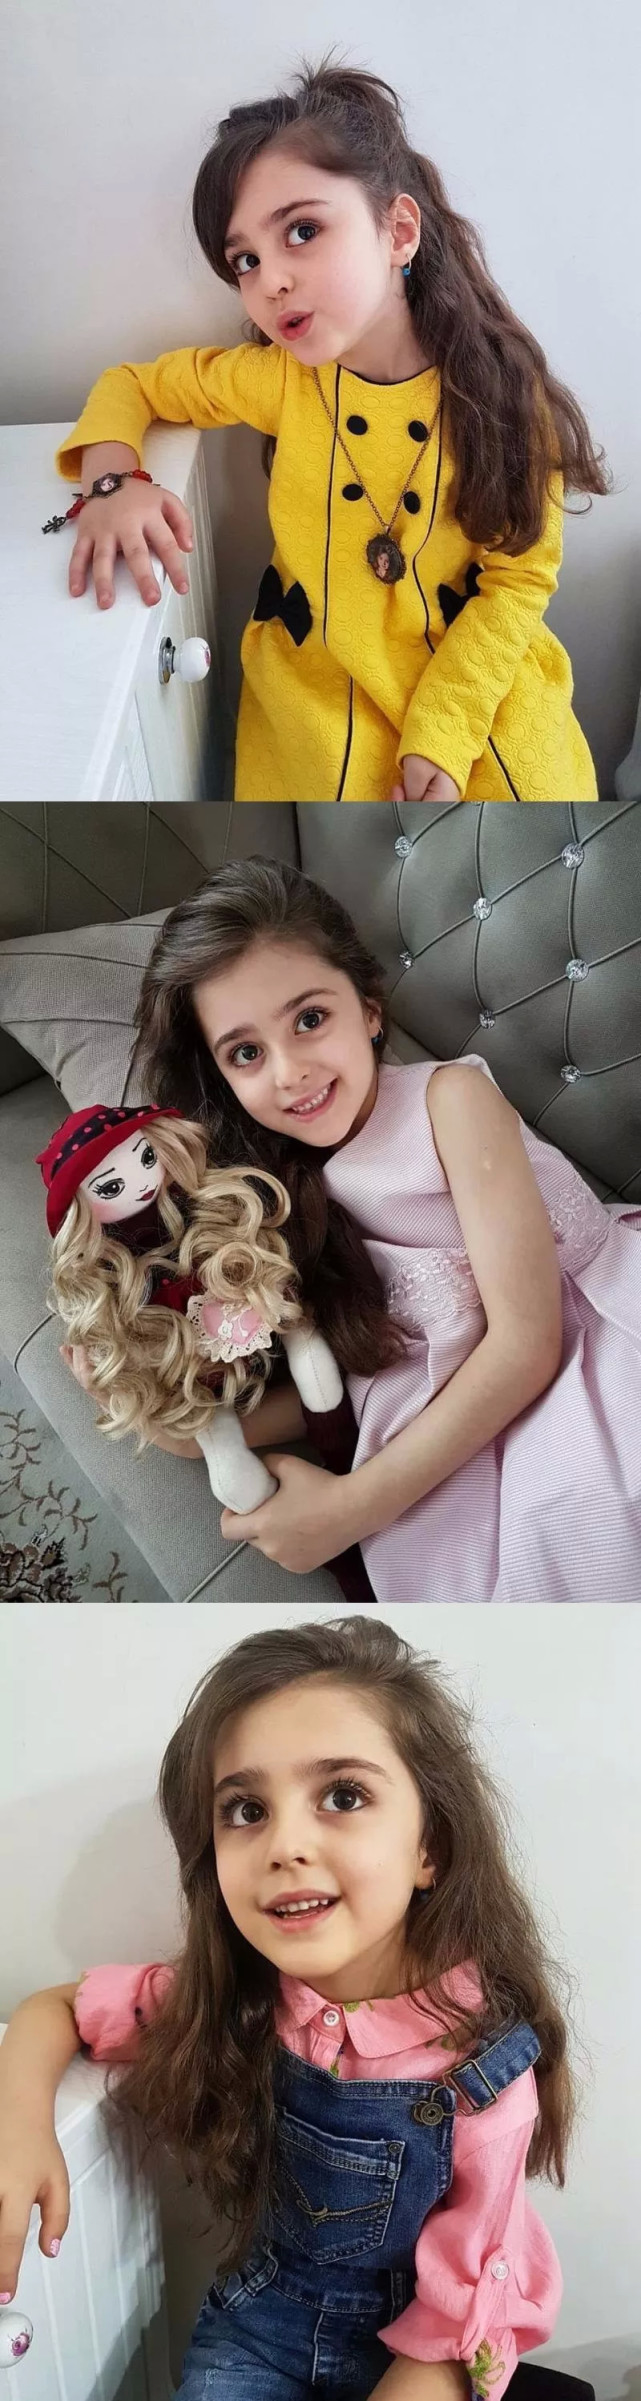 伊朗10岁"全球最美女孩"因太美,父亲辞职做贴身保镖